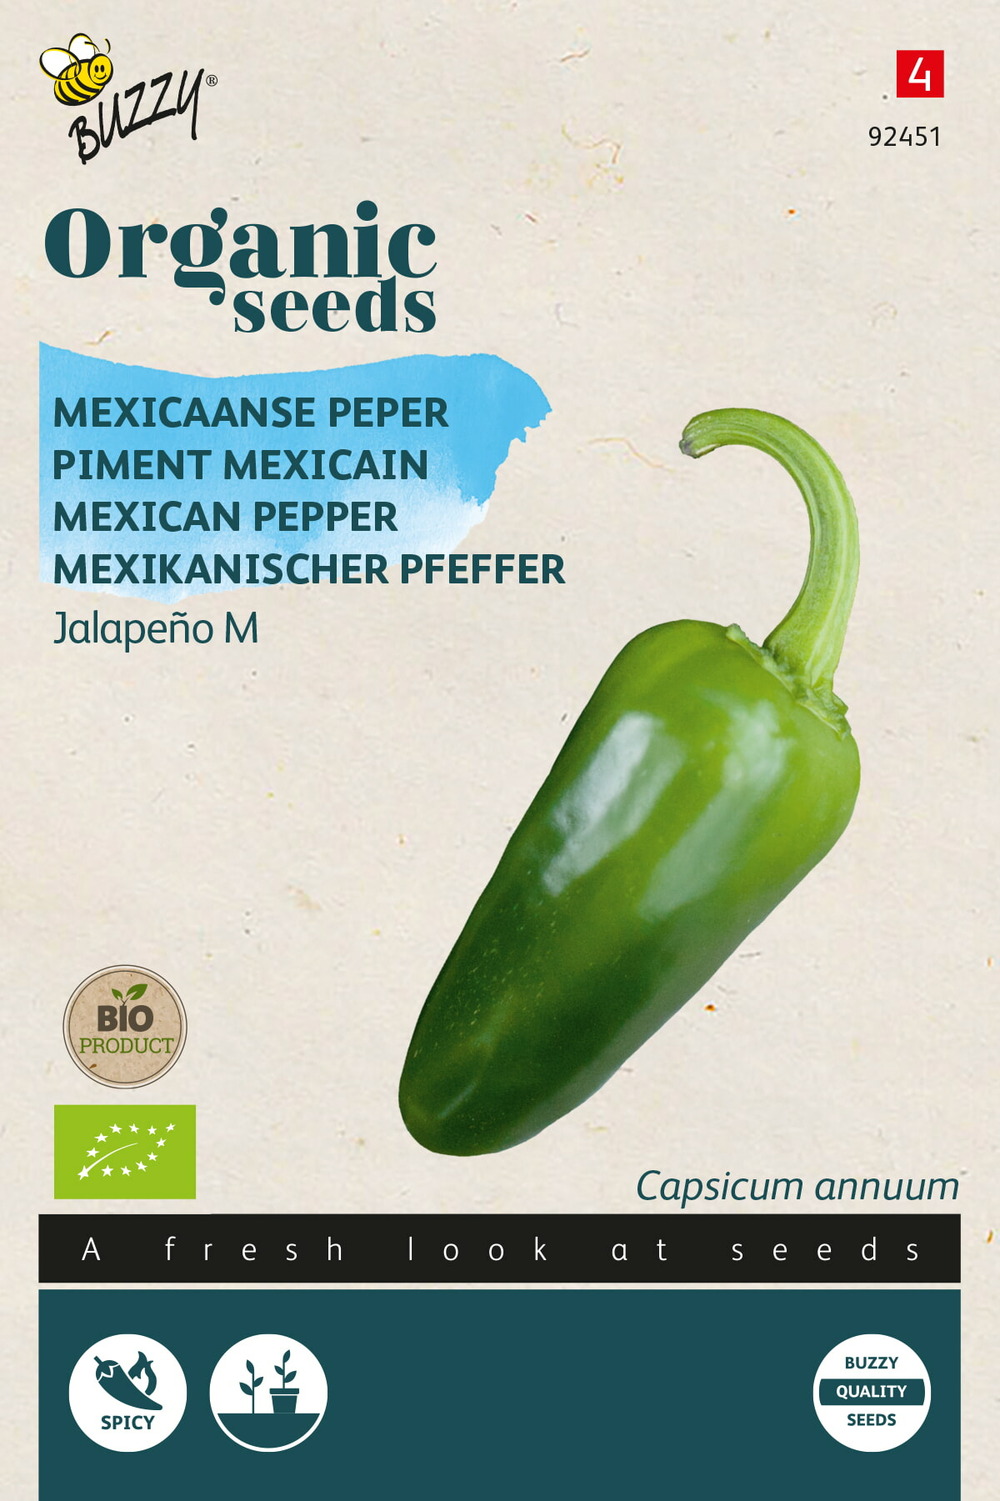 Buzzy organic piment mexicain jalapeño (bio) - ca. 0,15 gr